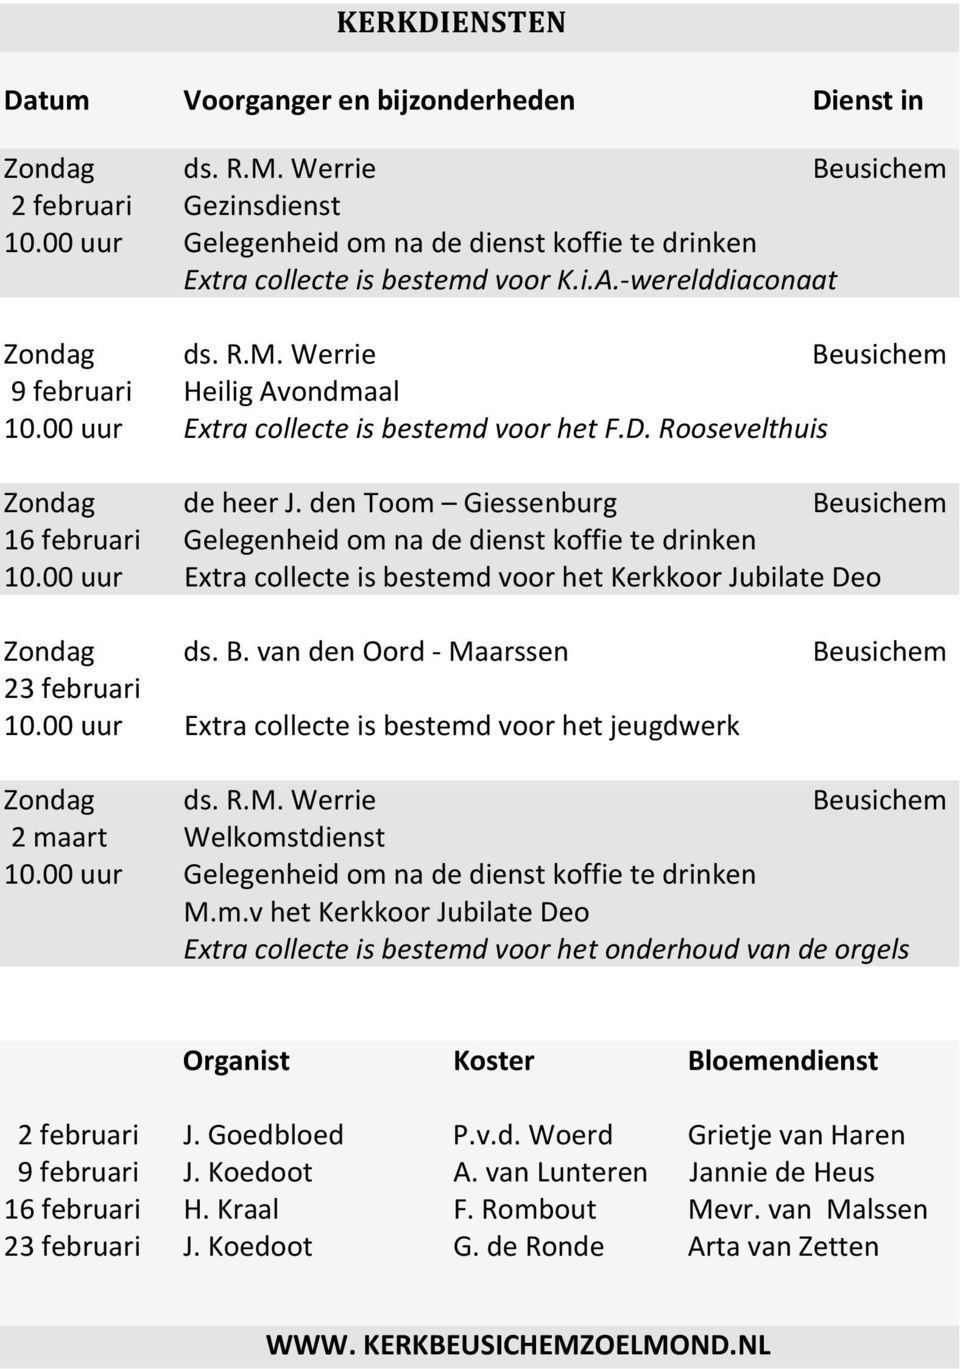 00 uur Extra collecte is bestemd voor het F.D. Roosevelthuis Zondag de heer J. den Toom Giessenburg Beusichem 16 februari Gelegenheid om na de dienst koffie te drinken 10.